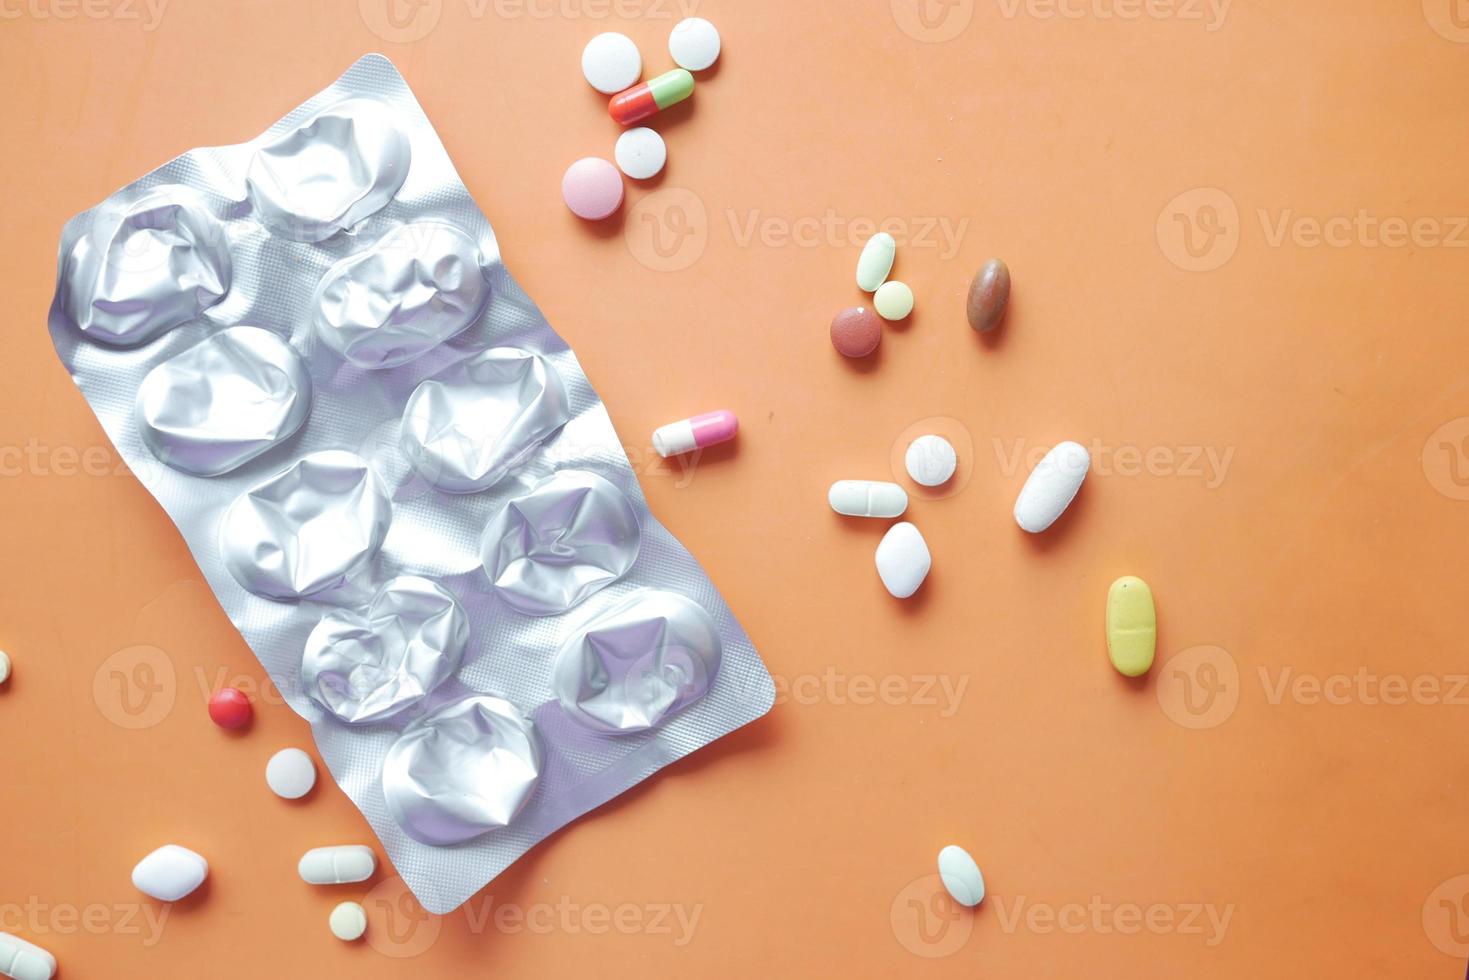 primo piano di pillole di blister e pillole mediche su sfondo arancione foto